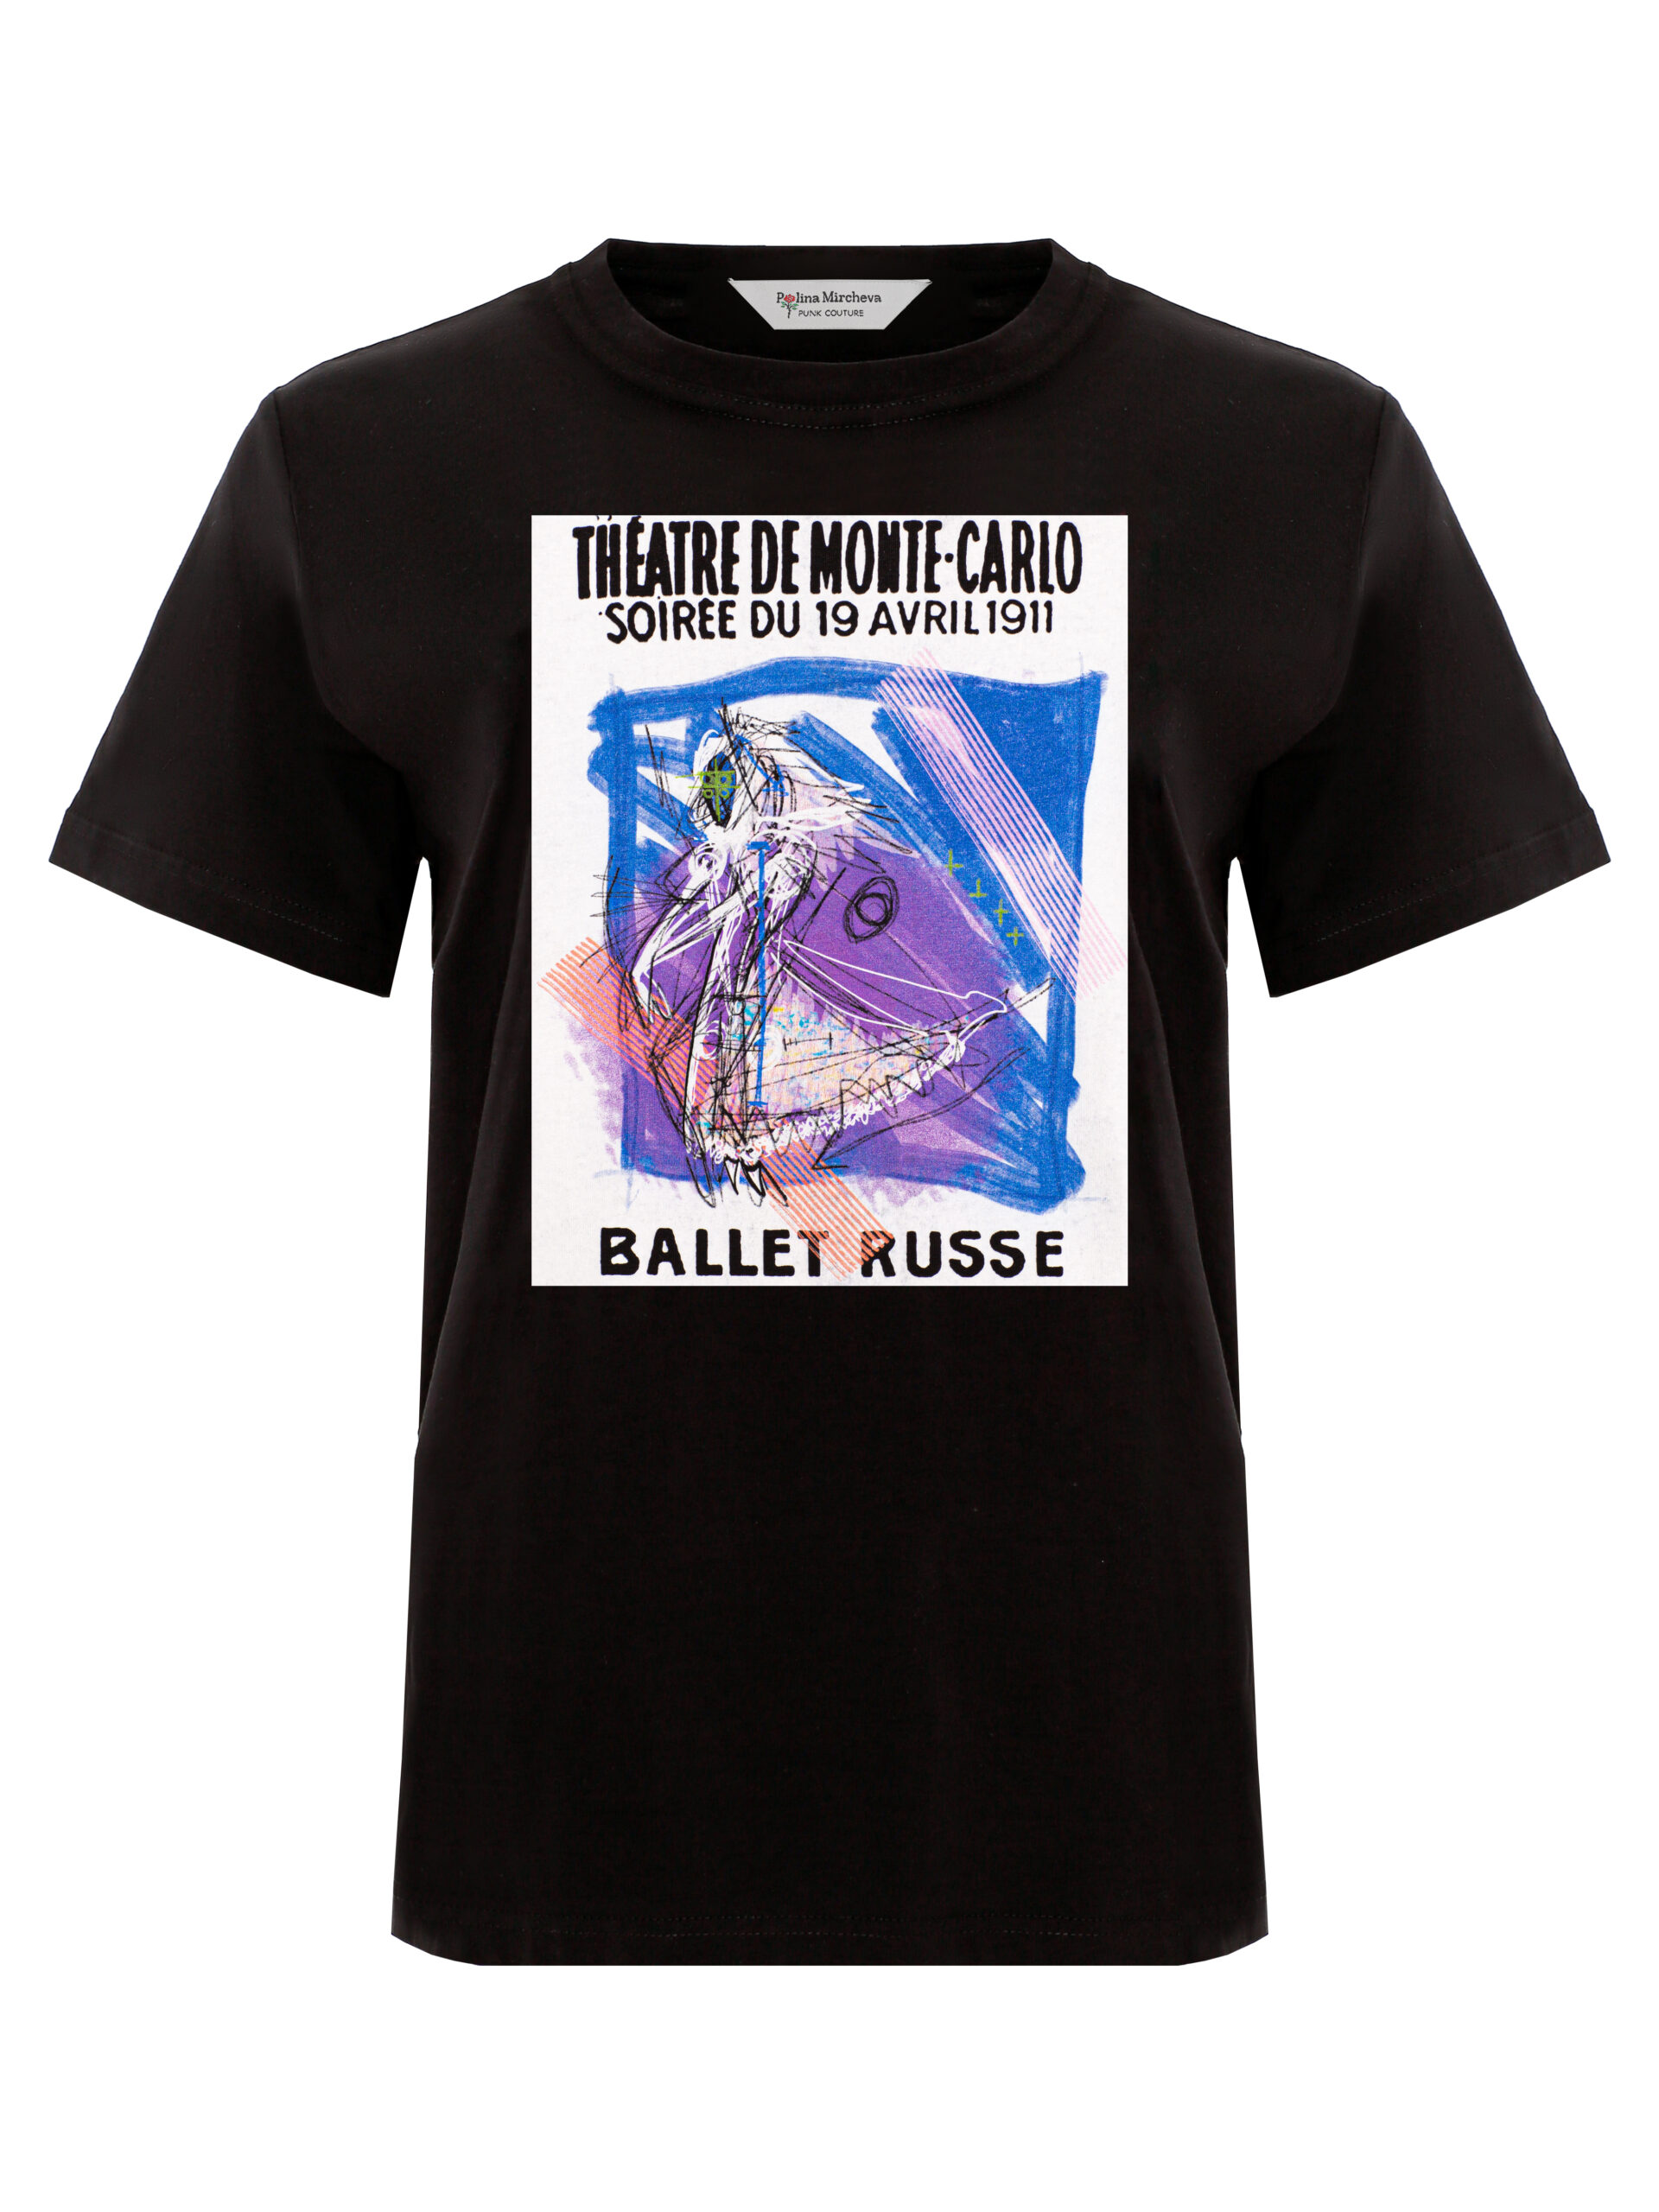 T-shirt Ballet russes